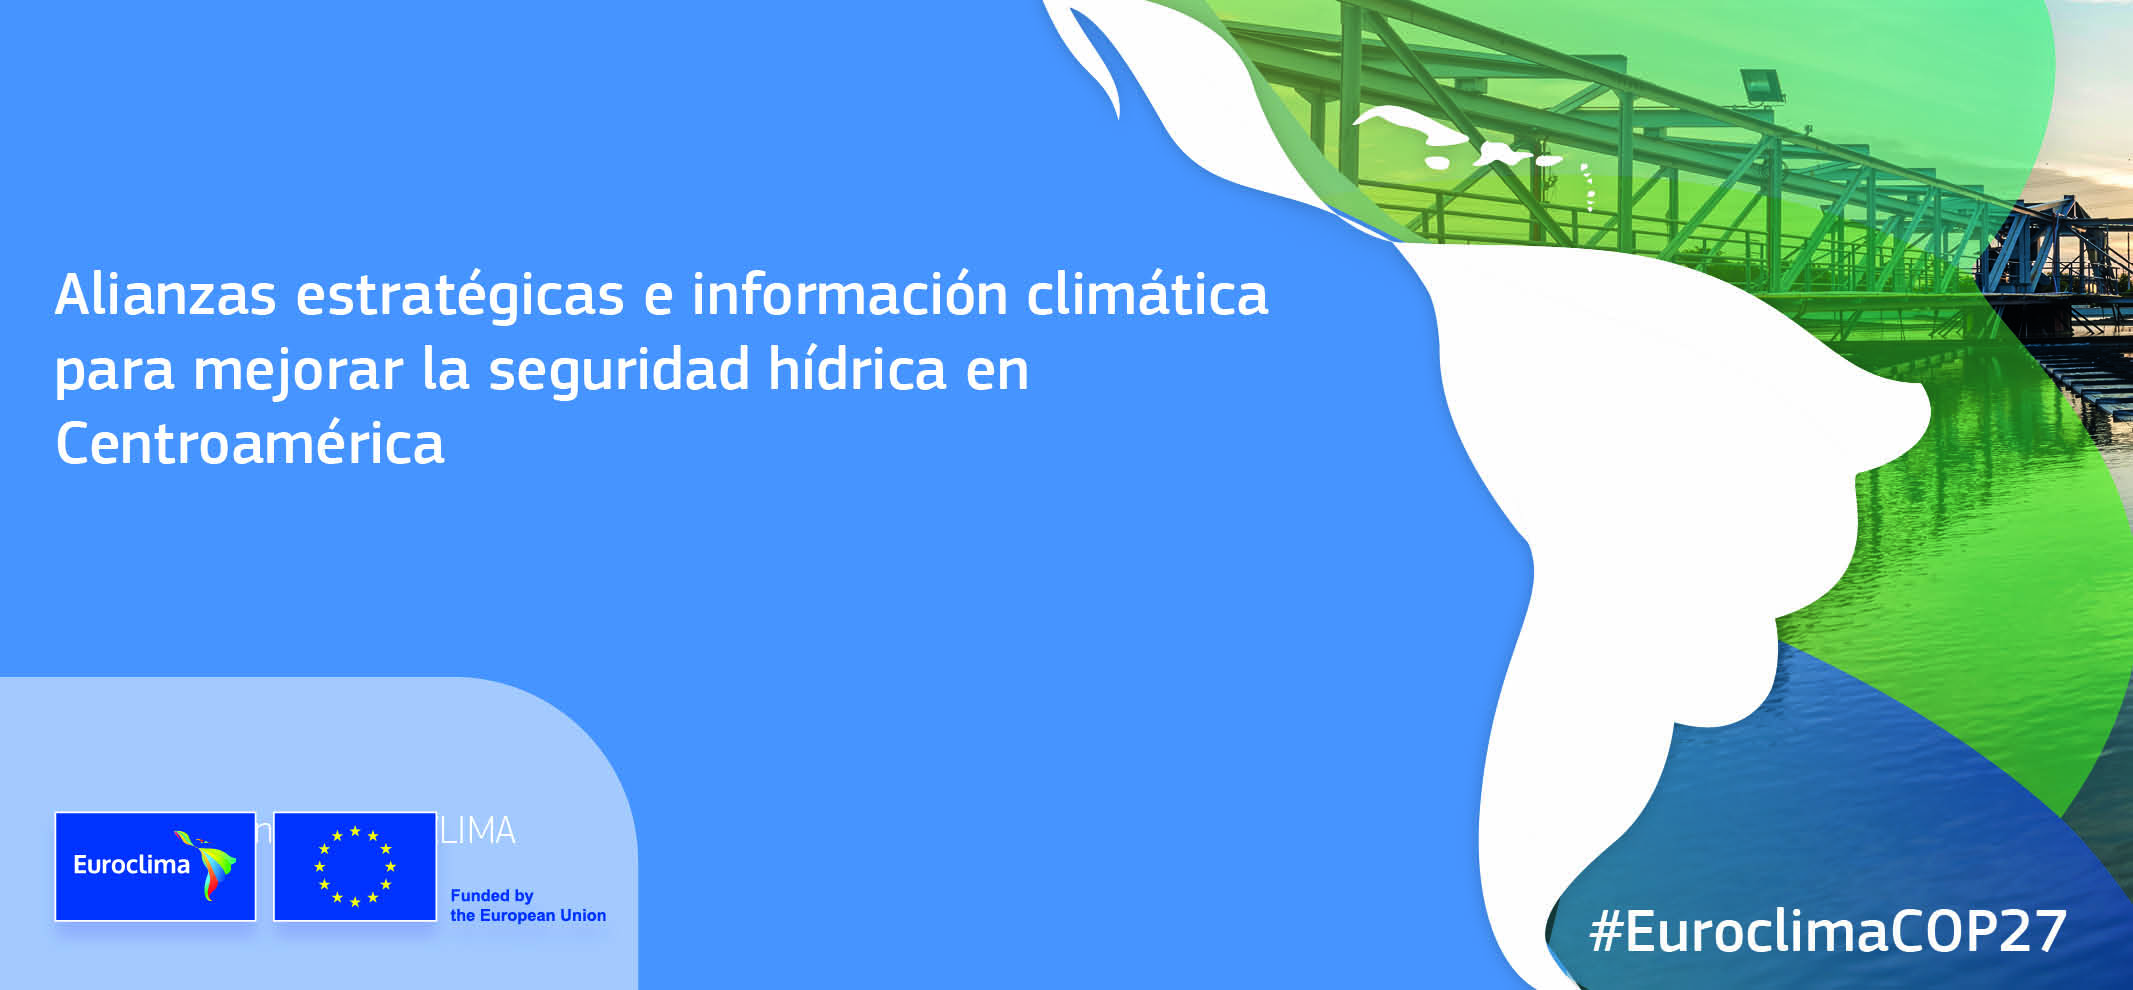 Alianzas estrategicas e informacion climatica para mejorar la seguridad hidrica en Centroamerica